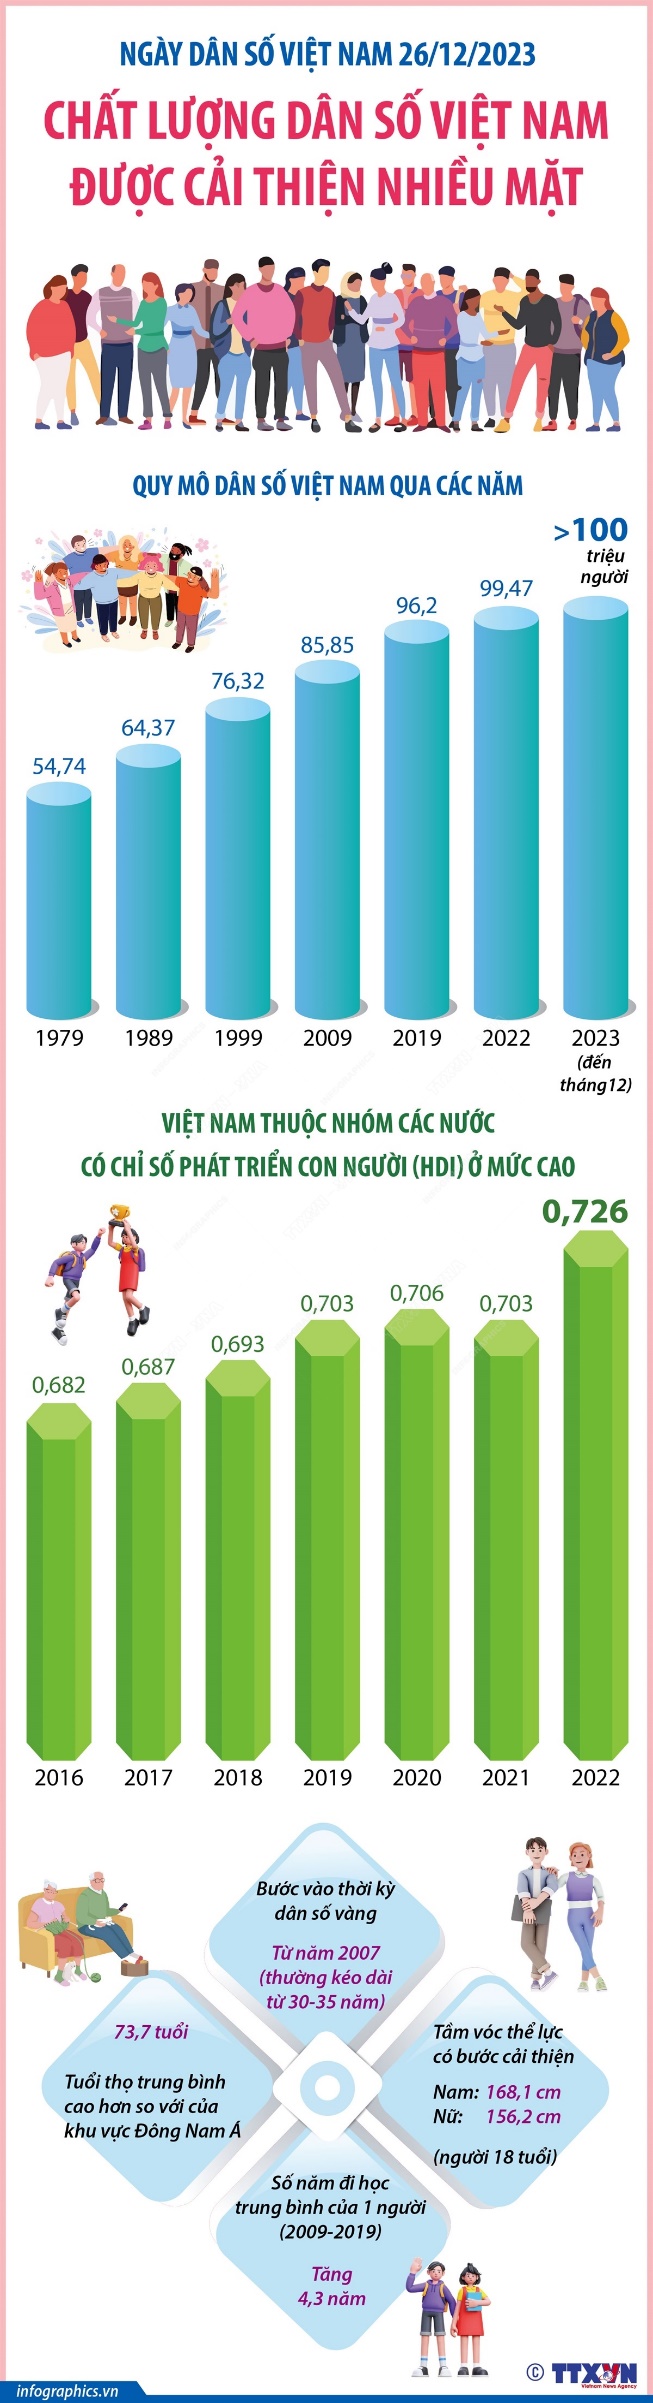 Ngày dân số Việt Nam 26/12/2023: Chất lượng dân số Việt Nam được cải thiện nhiều mặt